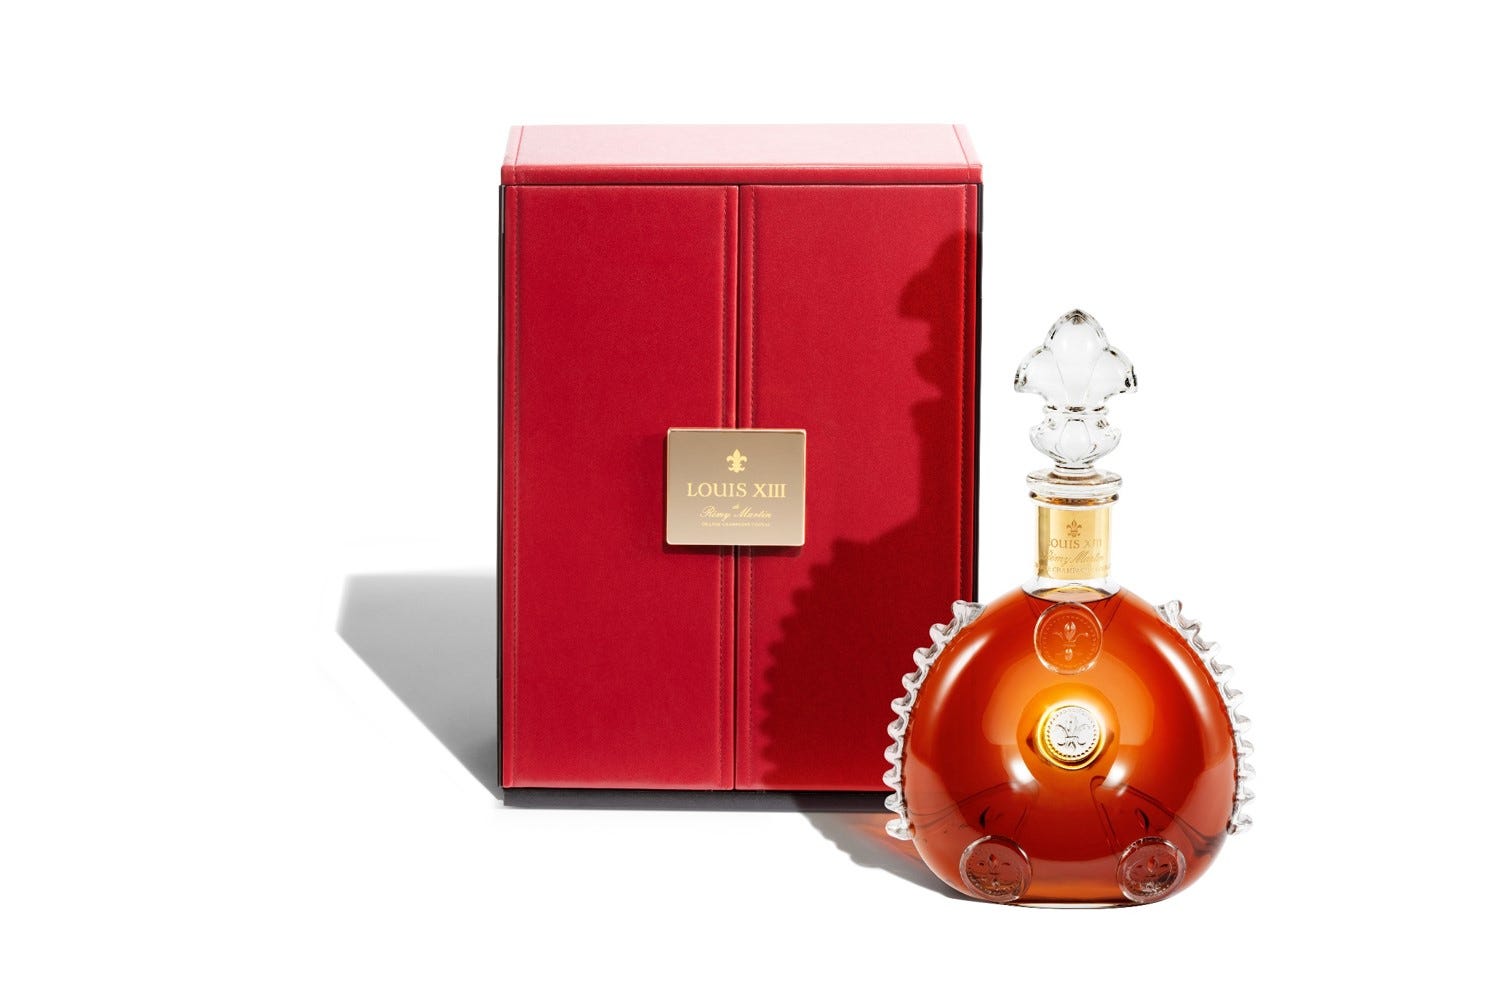 Louis XIII Cognac Magnum, 150cl, Fortnum & Mason